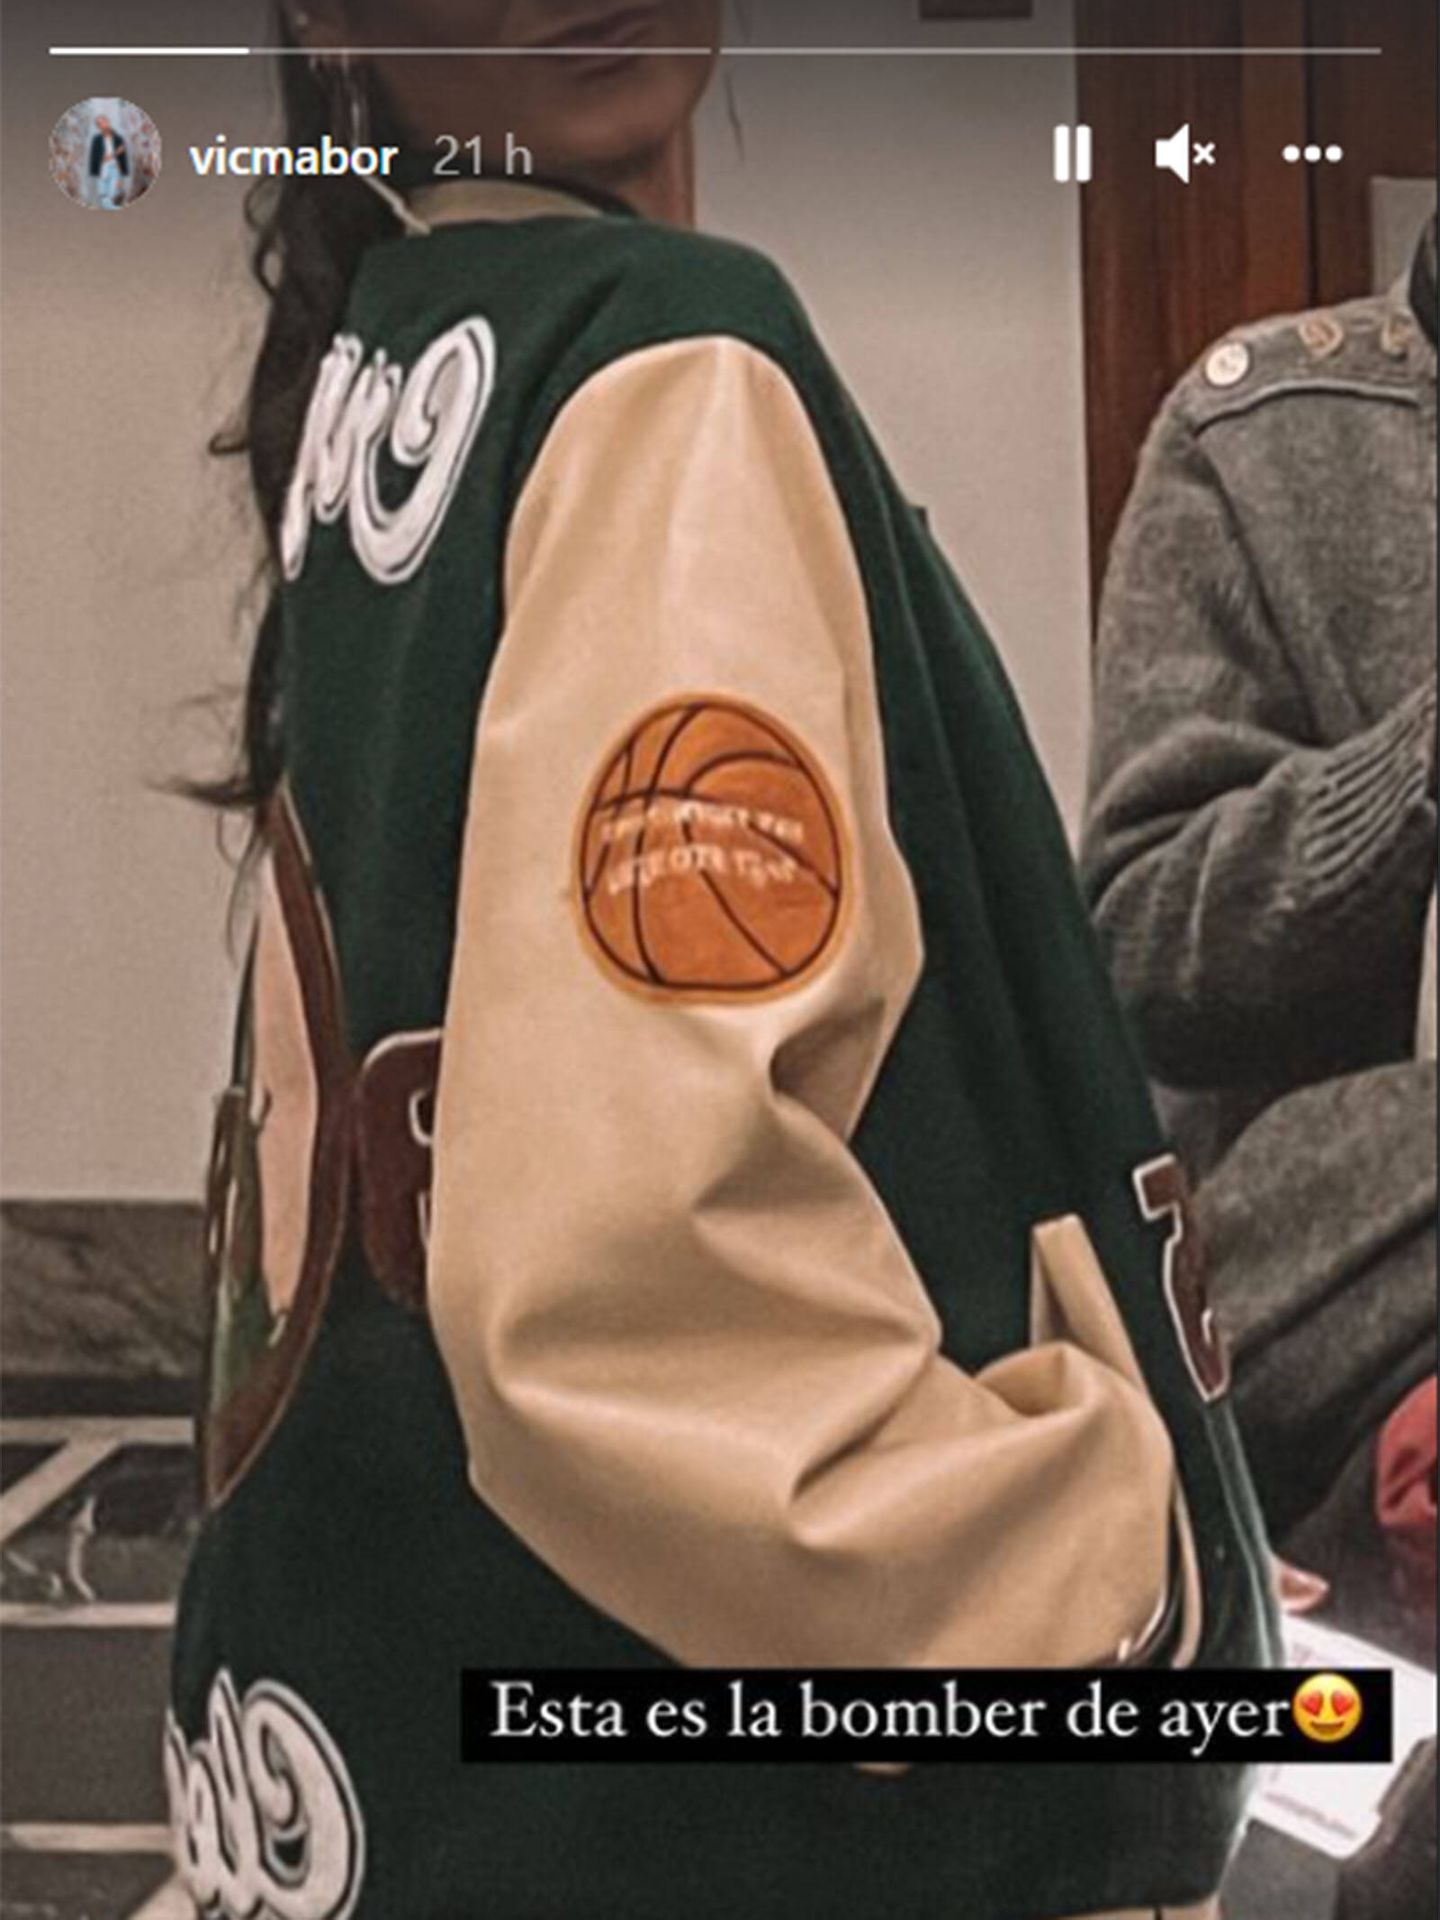 La chaqueta beisbolera de Zara que luce Victoria Federica. (Instagram @vicmabor)